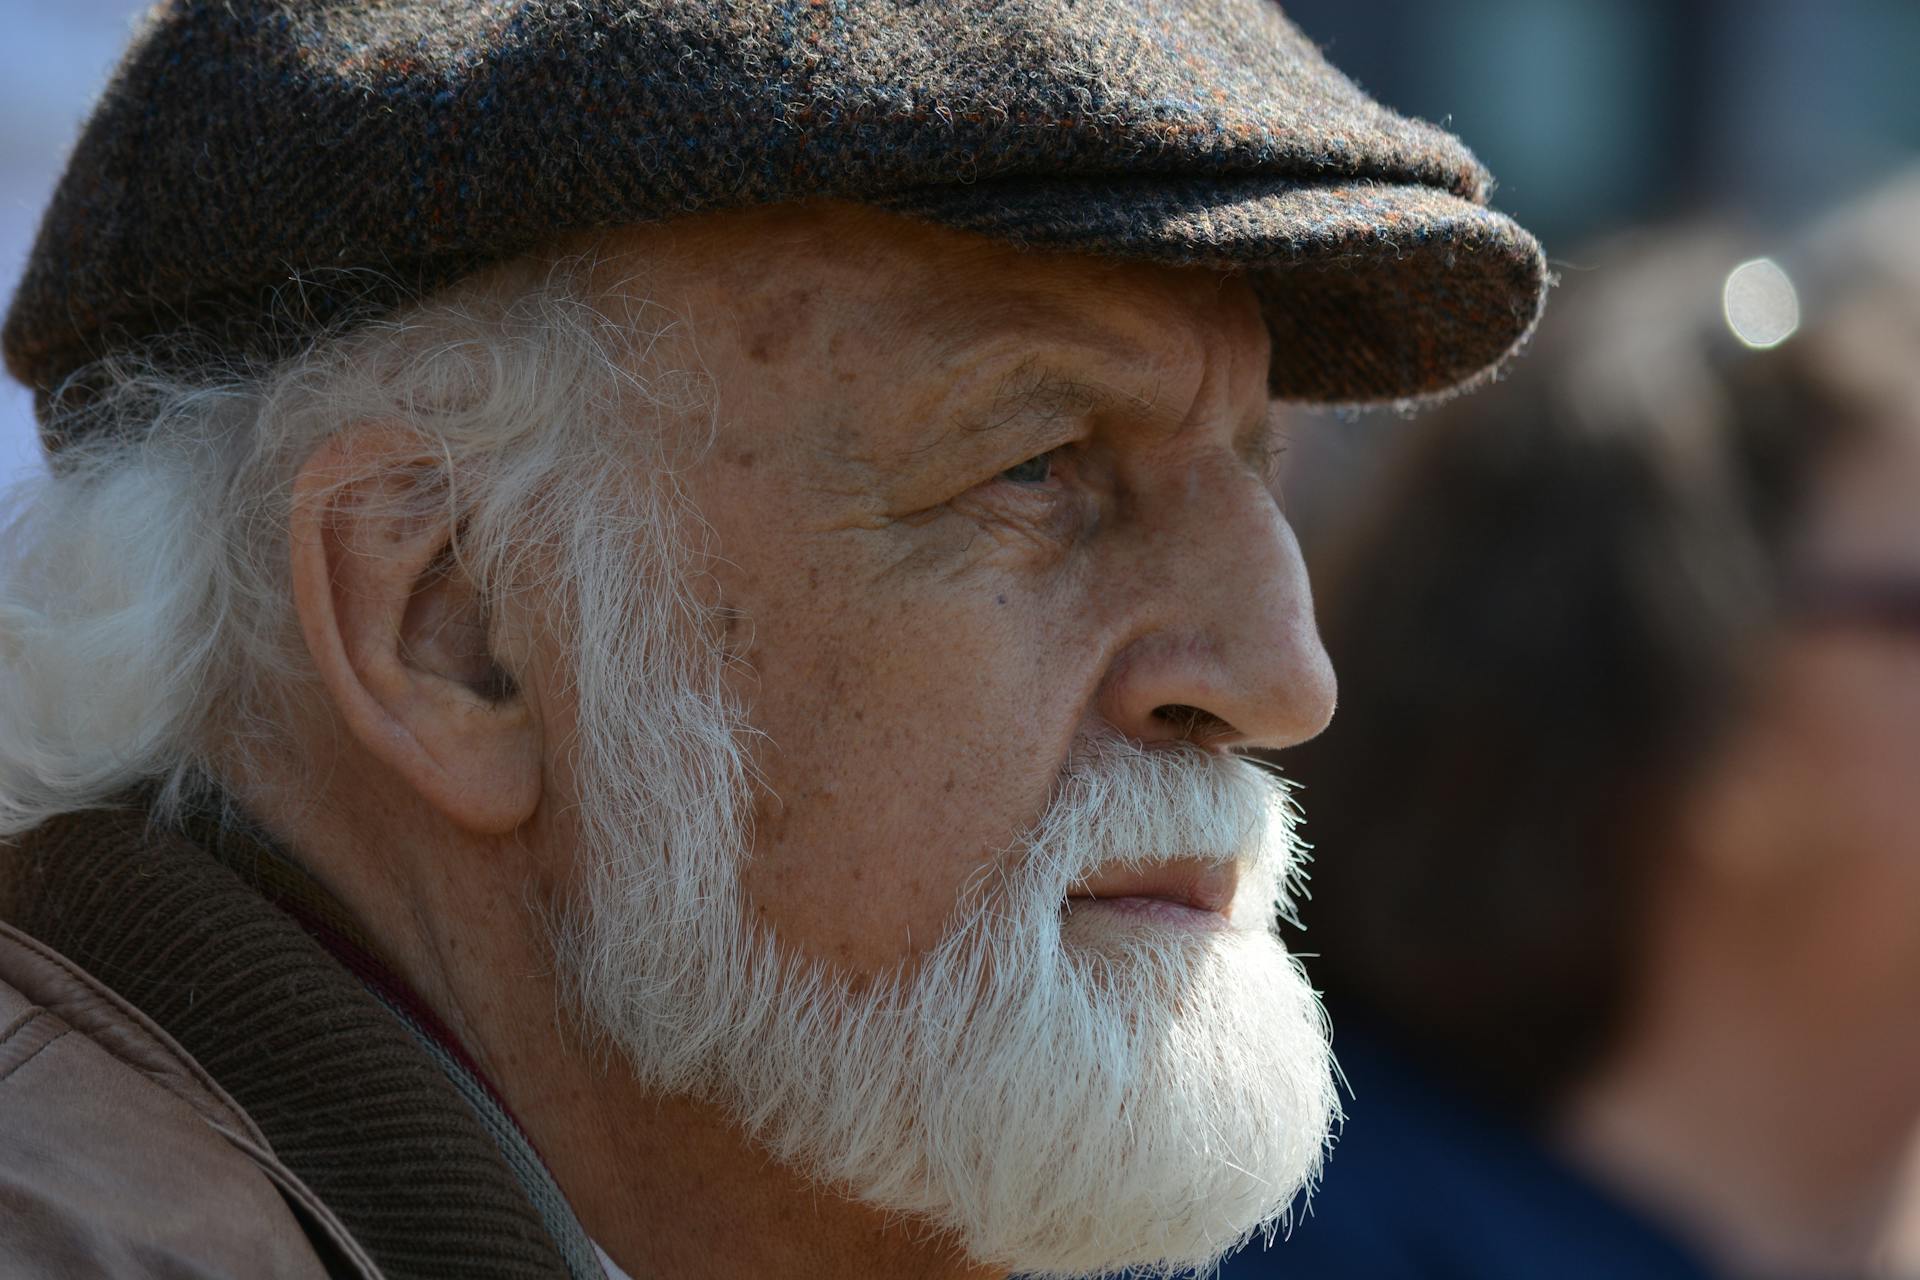 An elderly man wearing a flat cap | Source: Pexels